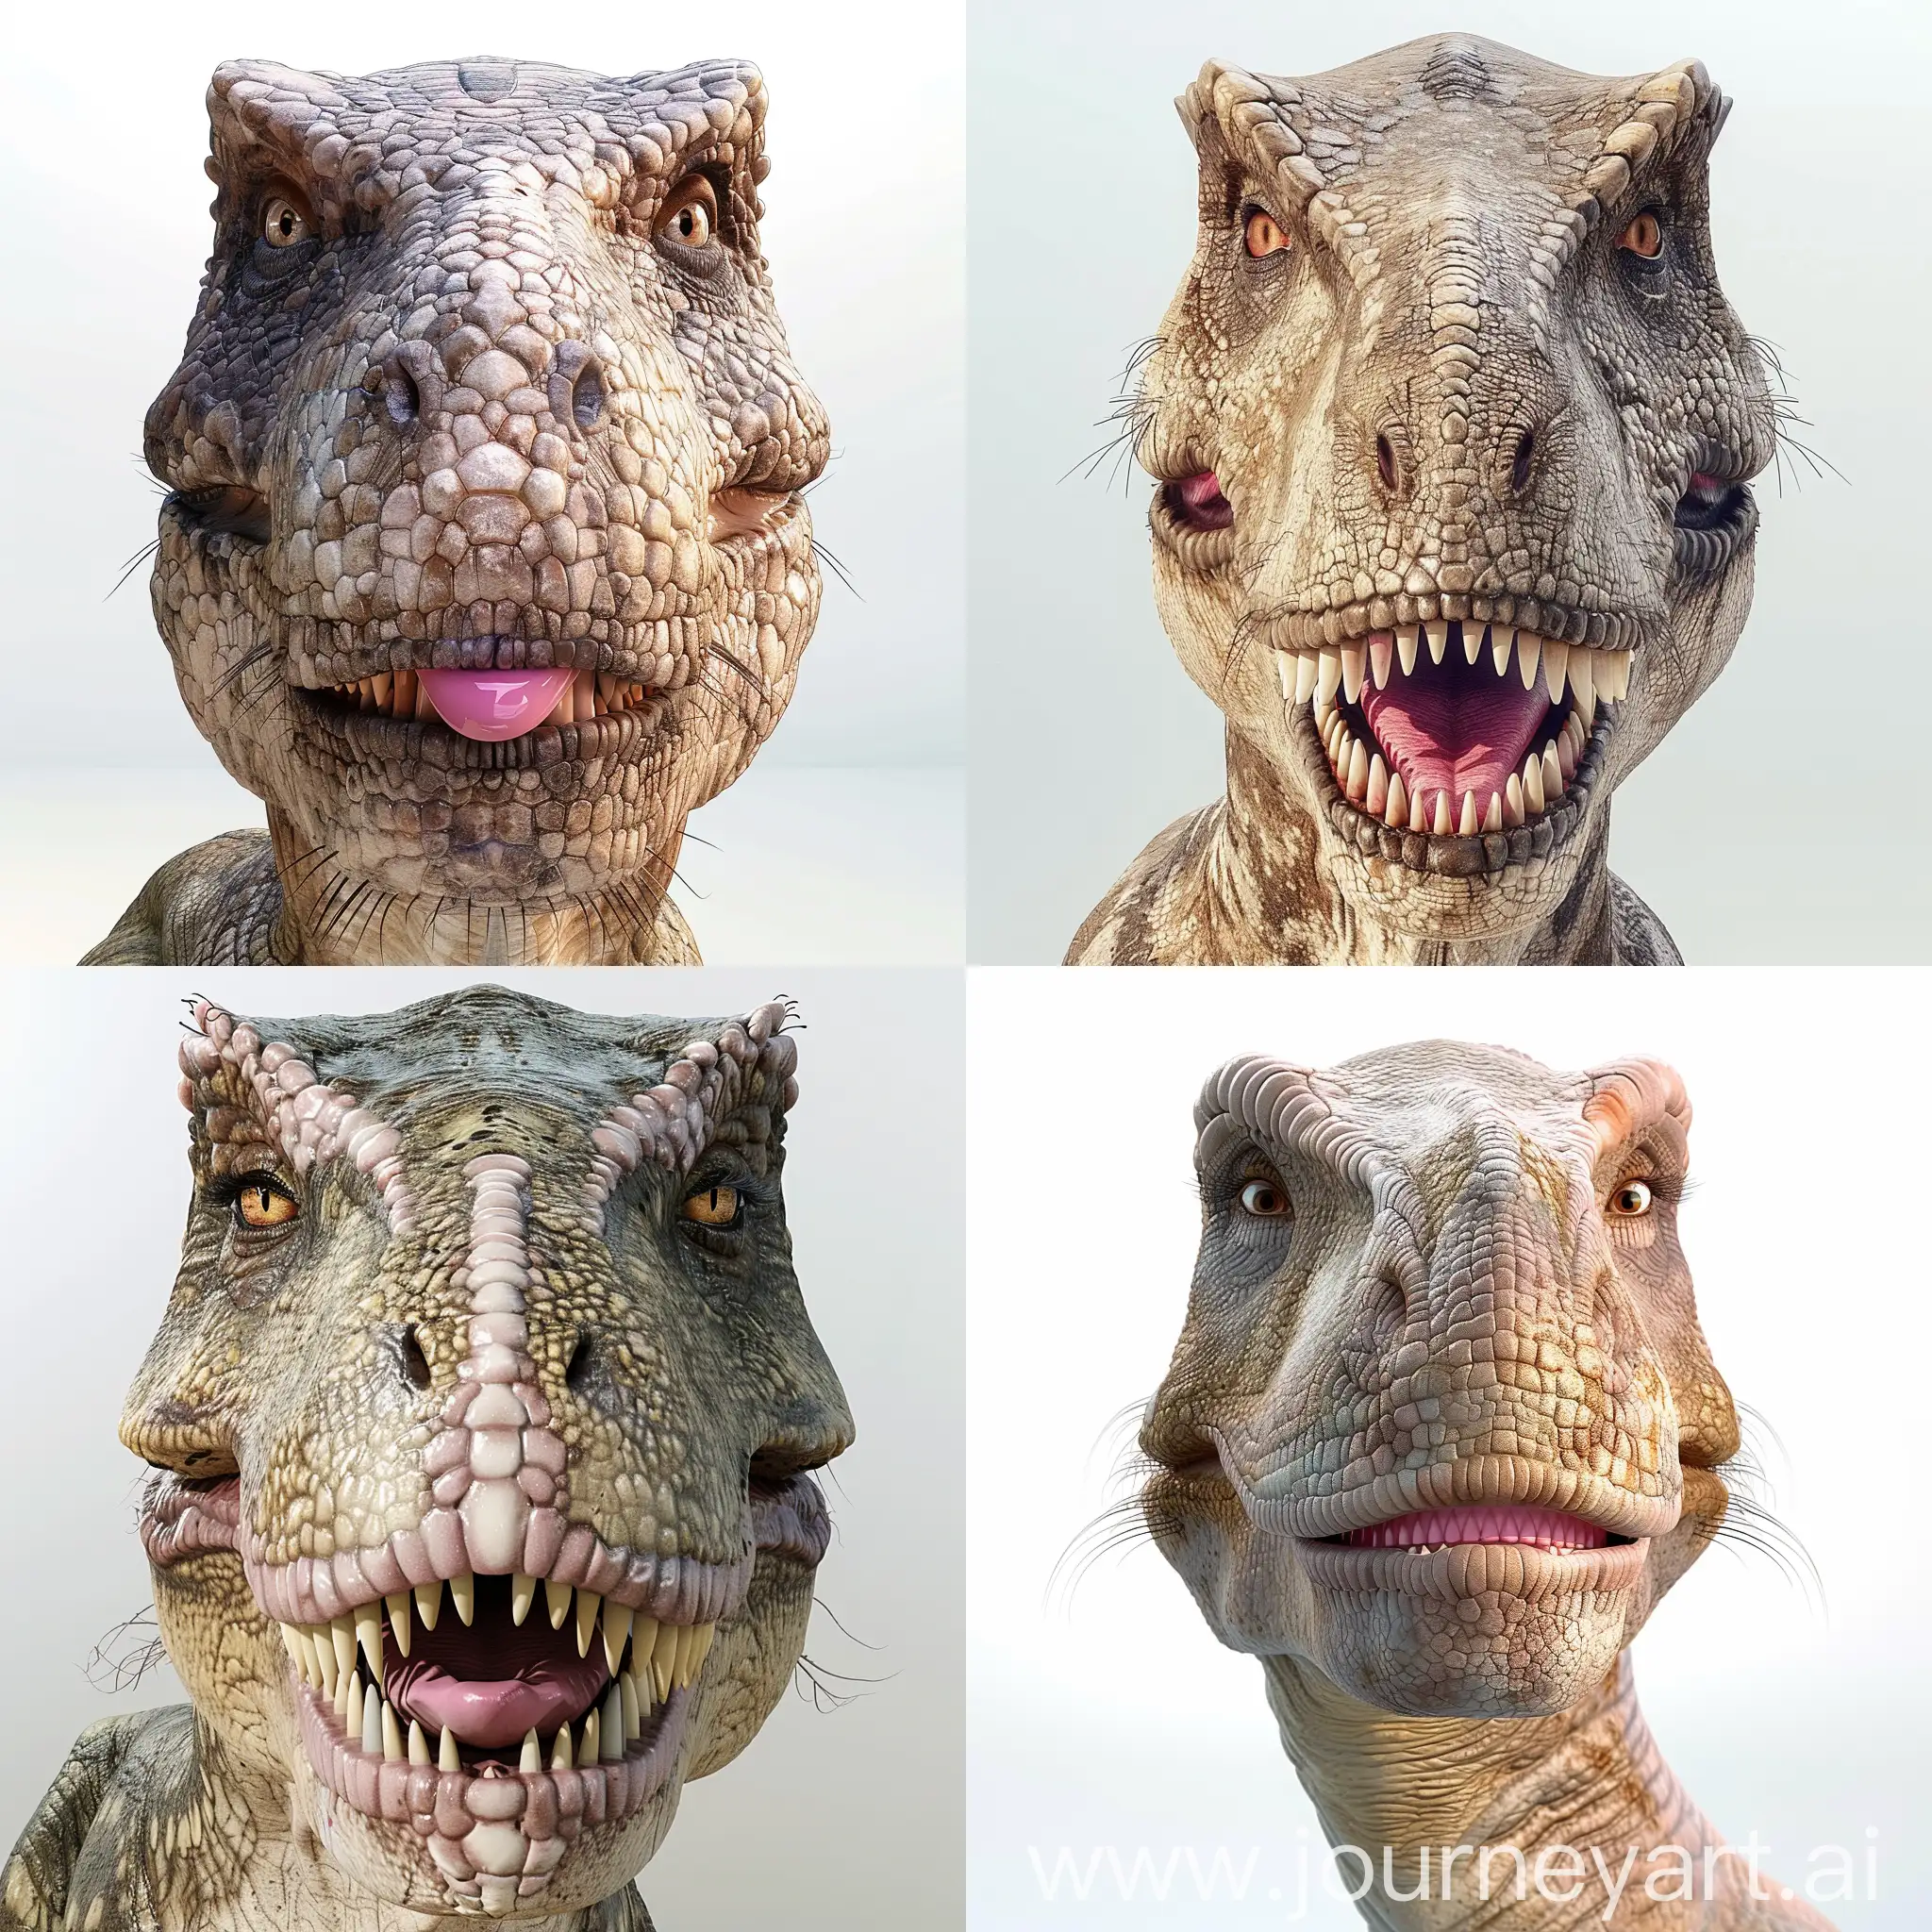 3D-Tyrannosaurus-Rex-with-Playful-Makeup